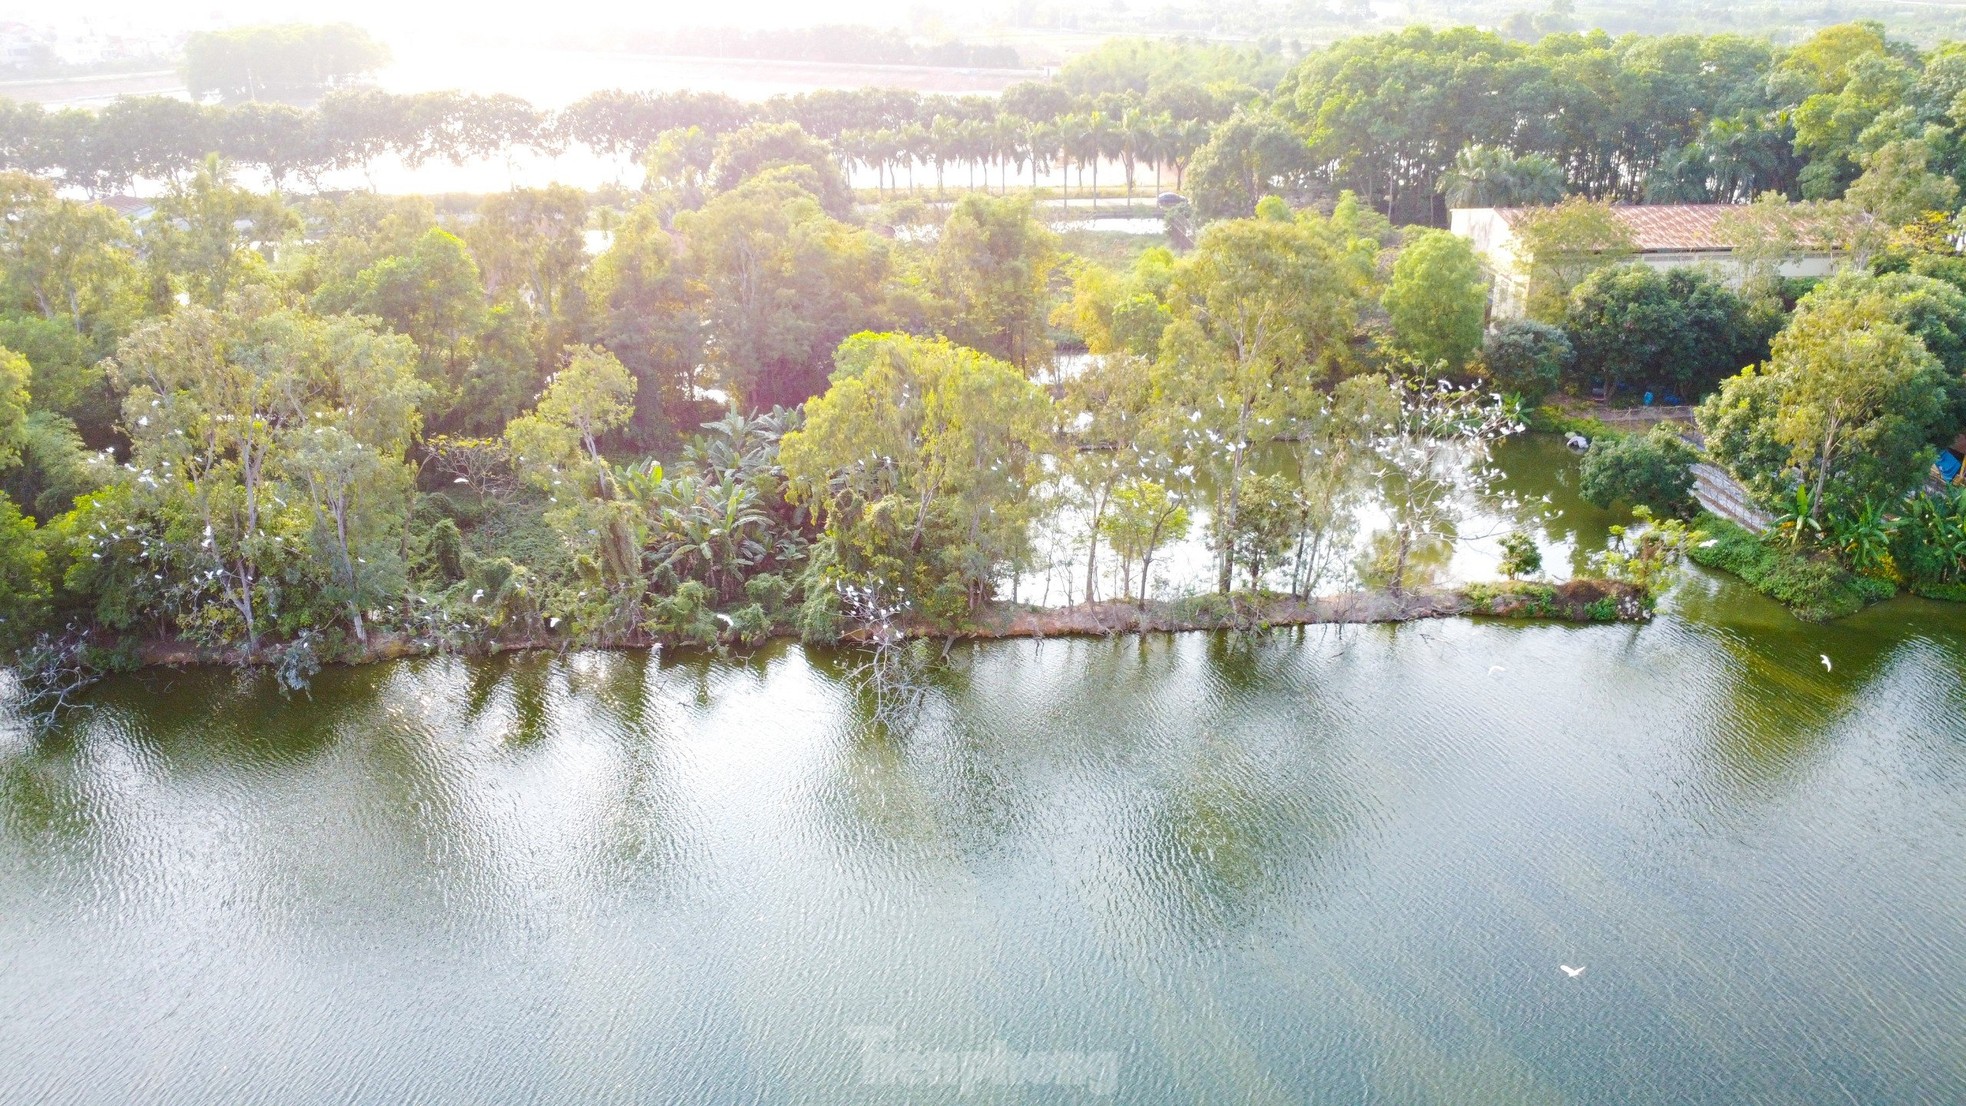 Khuôn viên độc đáo của Trường Đại học Nông - Lâm Bắc Giang ảnh 2